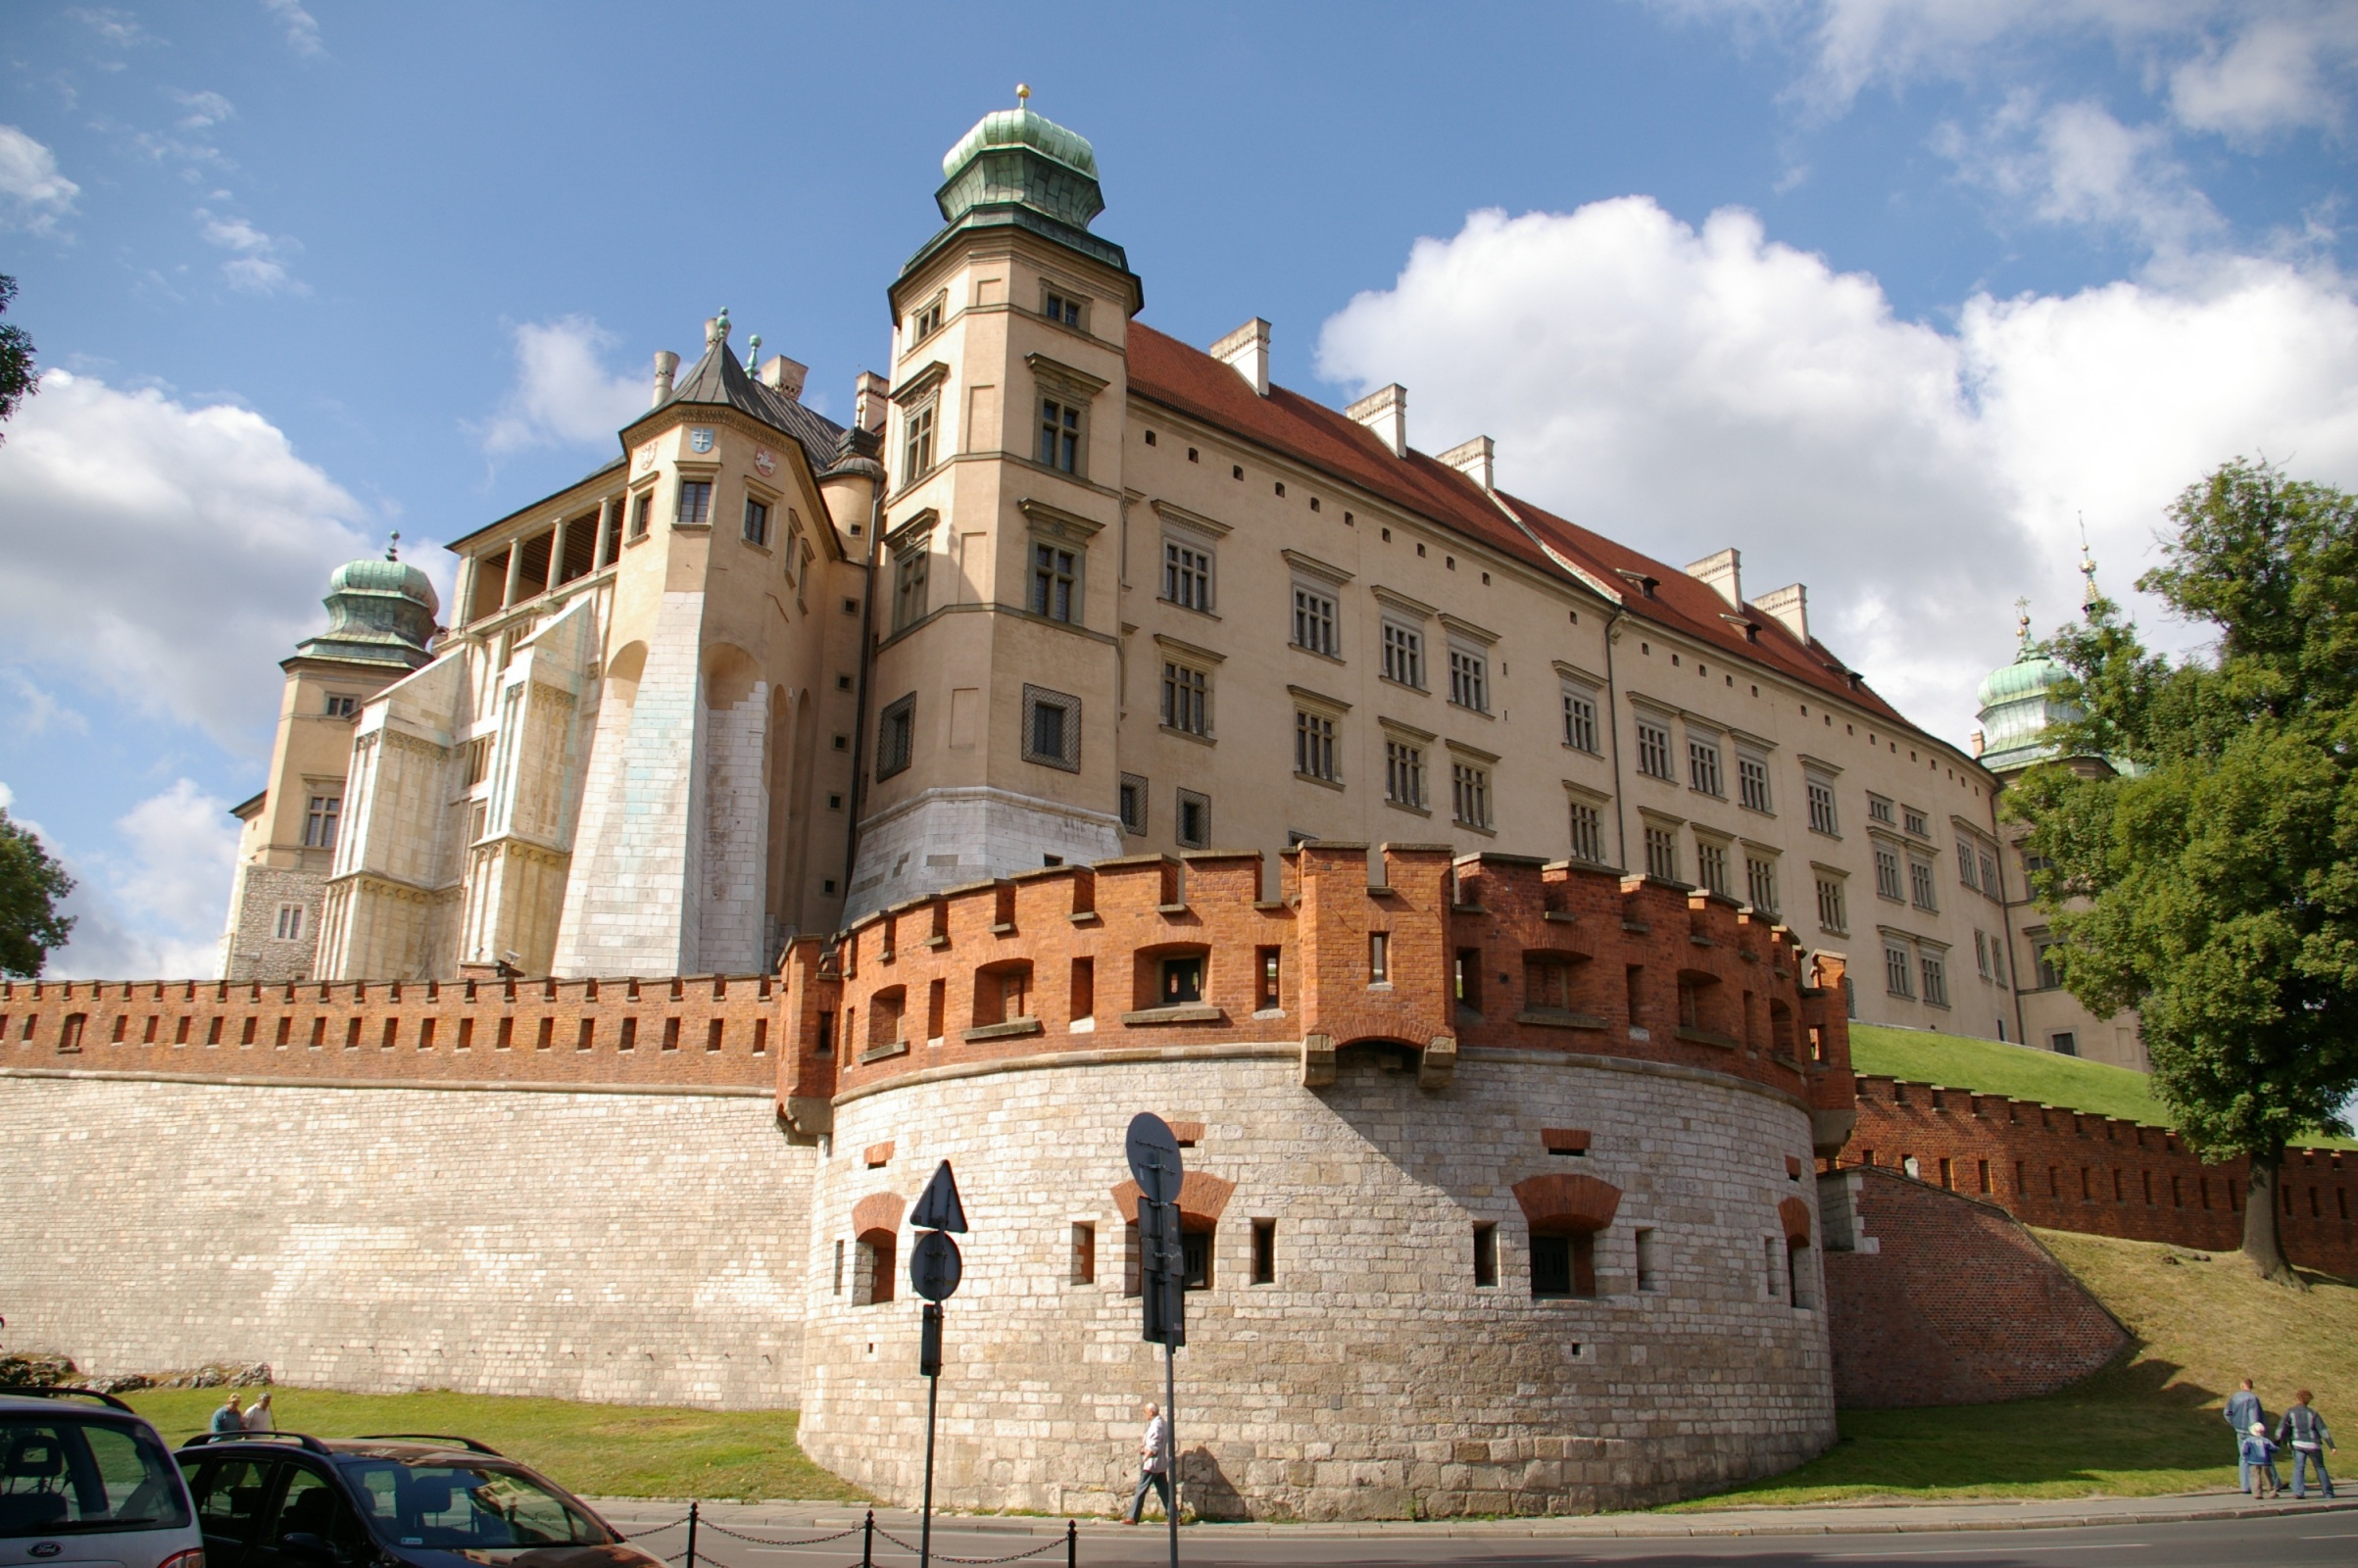 O Castelo Real de Wawel guarda o corpo de monarcas, além de heróis e poetas poloneses